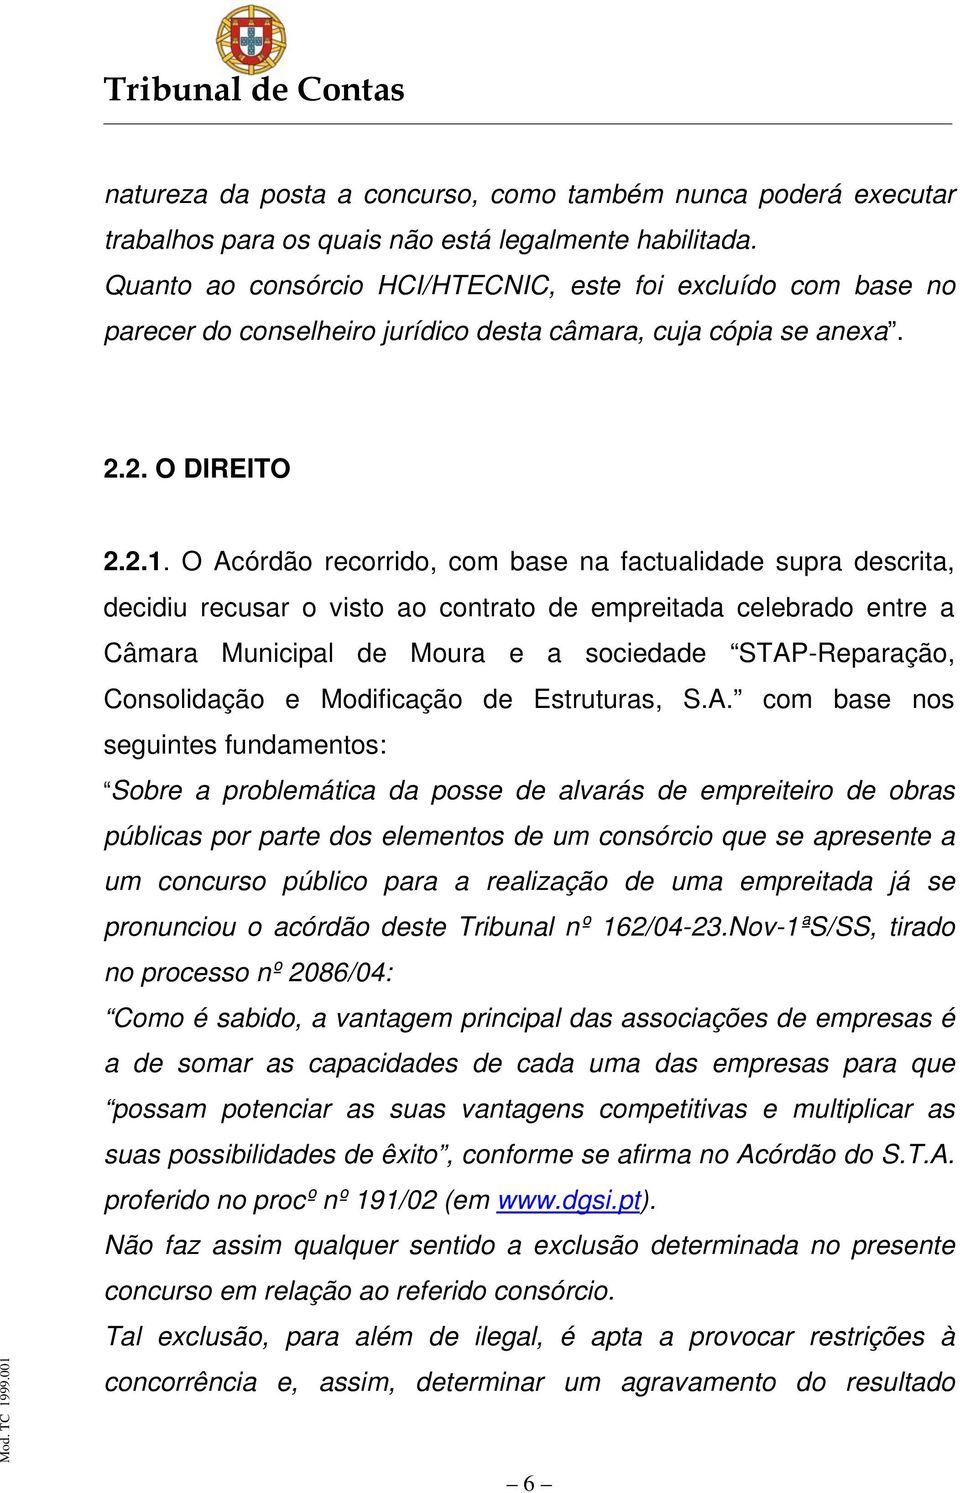 O Acórdão recorrido, com base na factualidade supra descrita, decidiu recusar o visto ao contrato de empreitada celebrado entre a Câmara Municipal de Moura e a sociedade STAP-Reparação, Consolidação